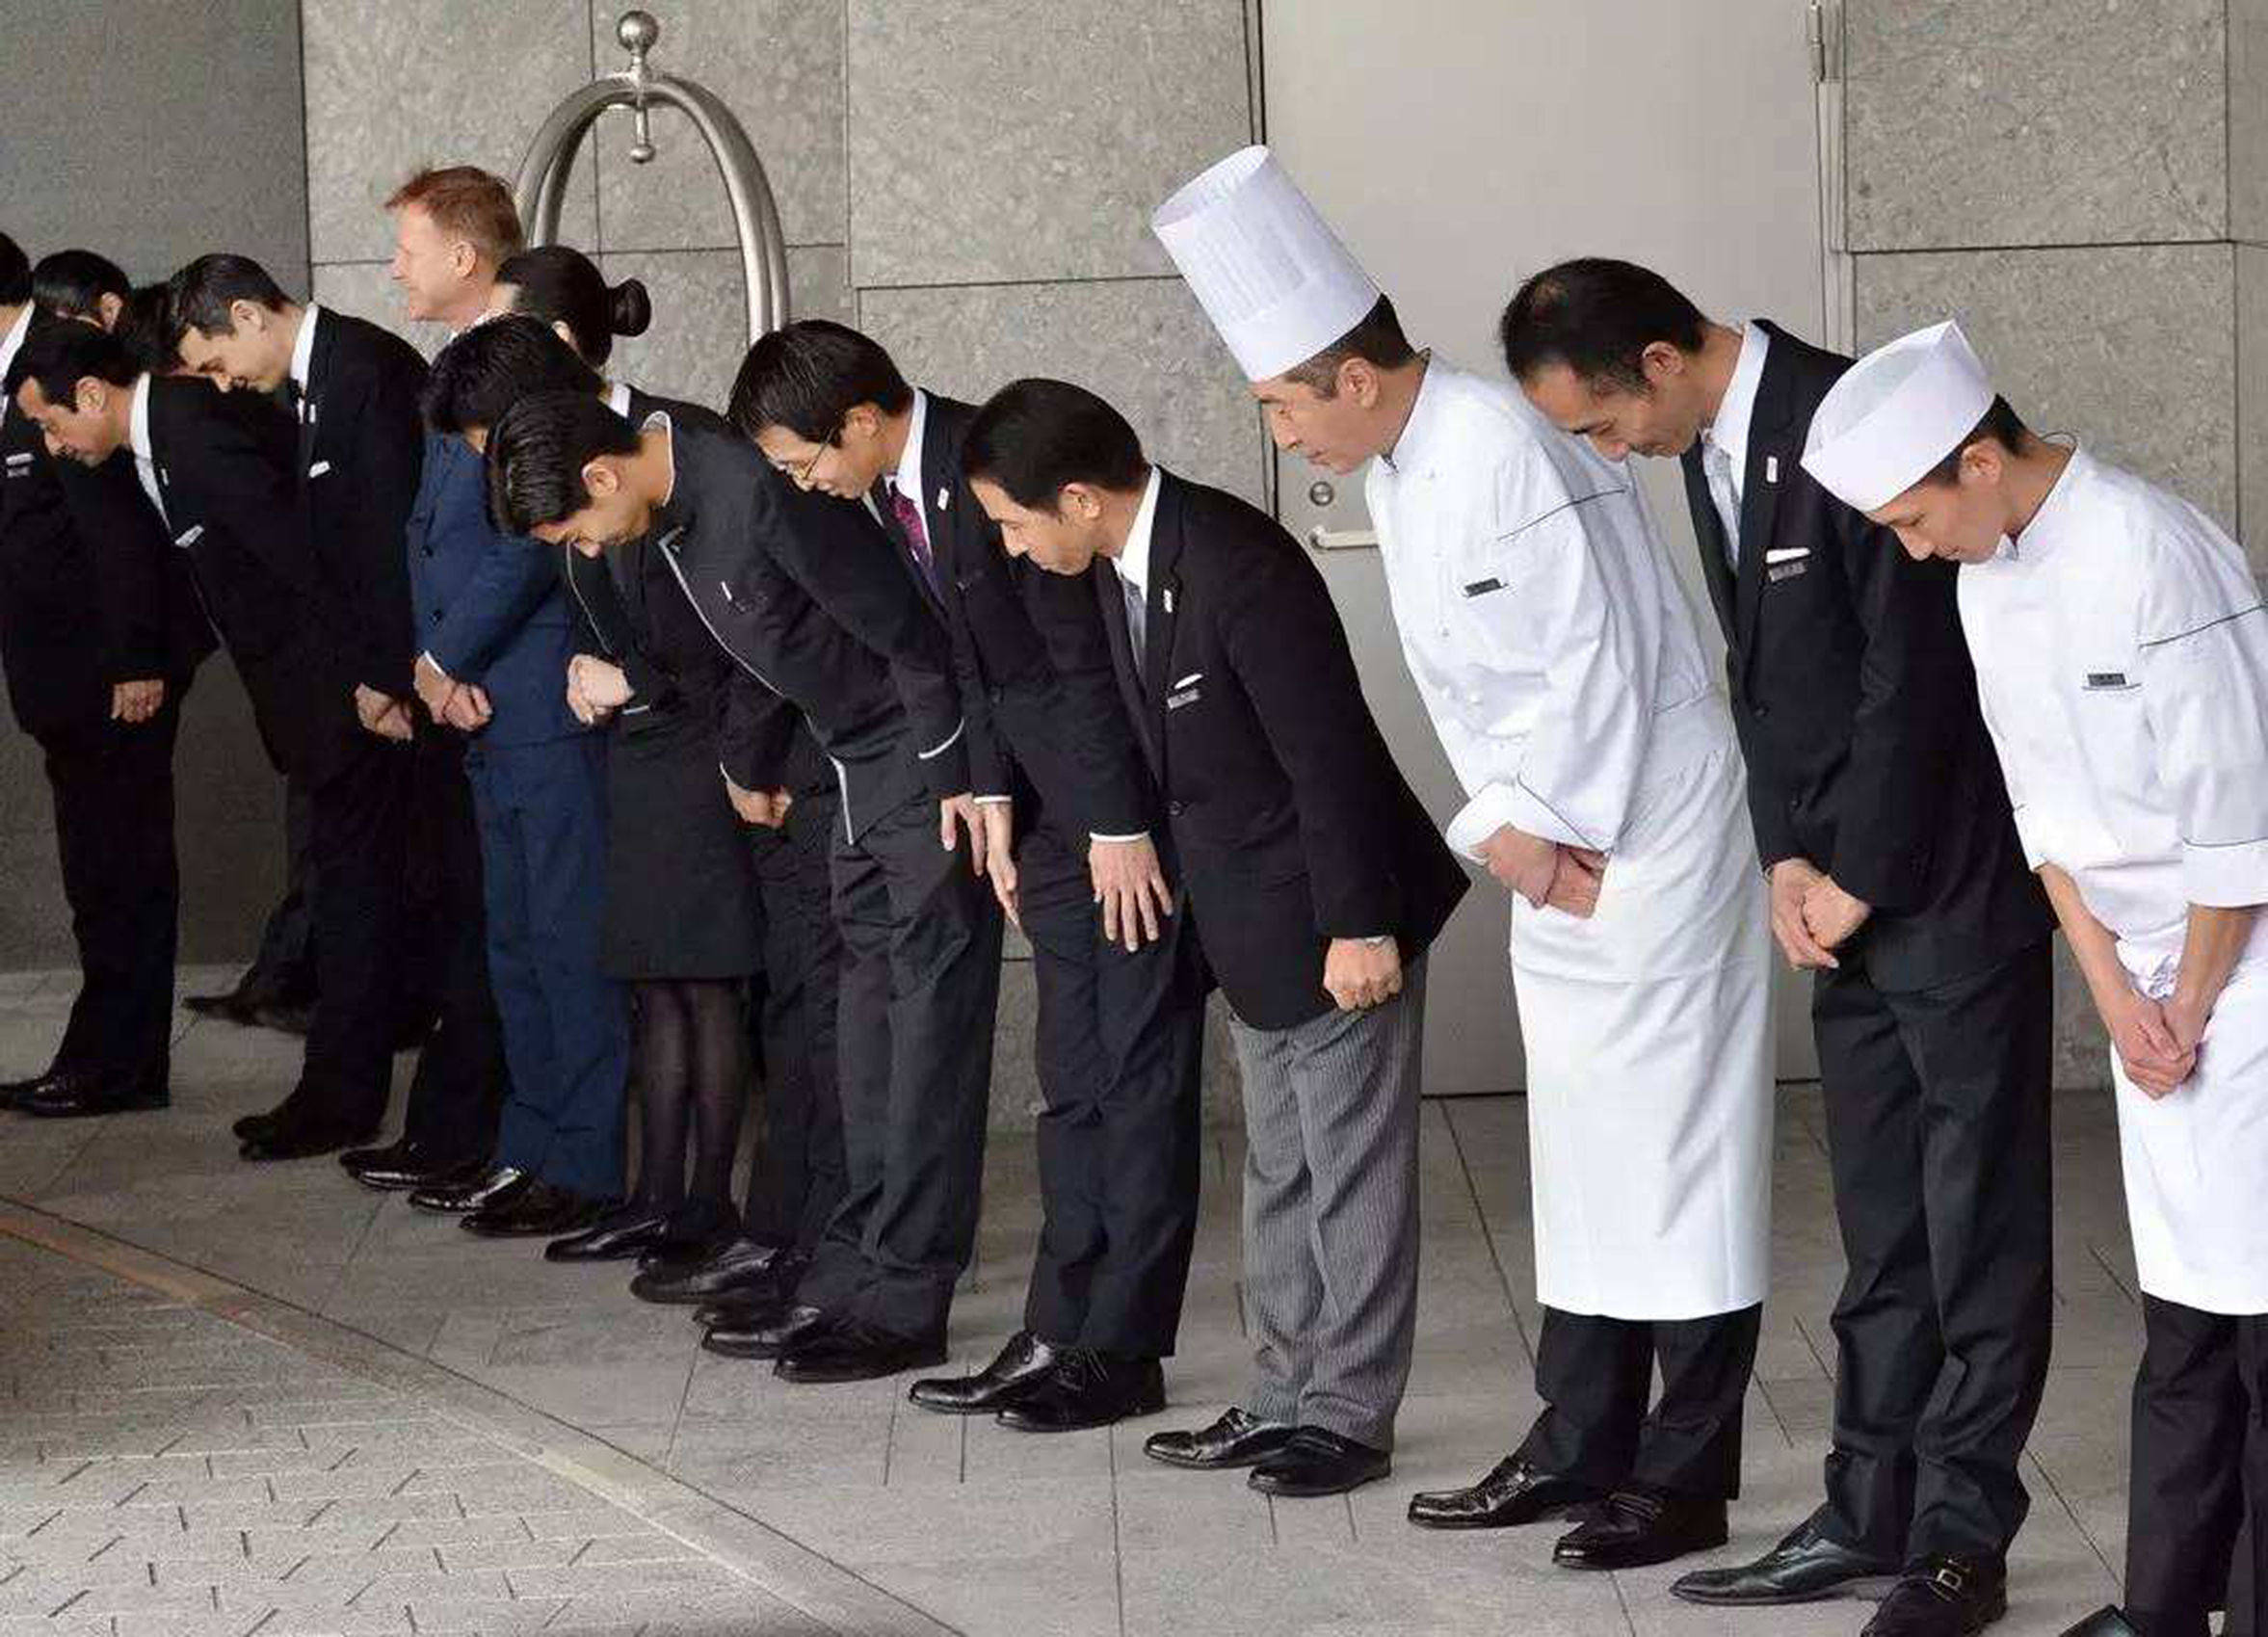 日本社交礼仪文化图片